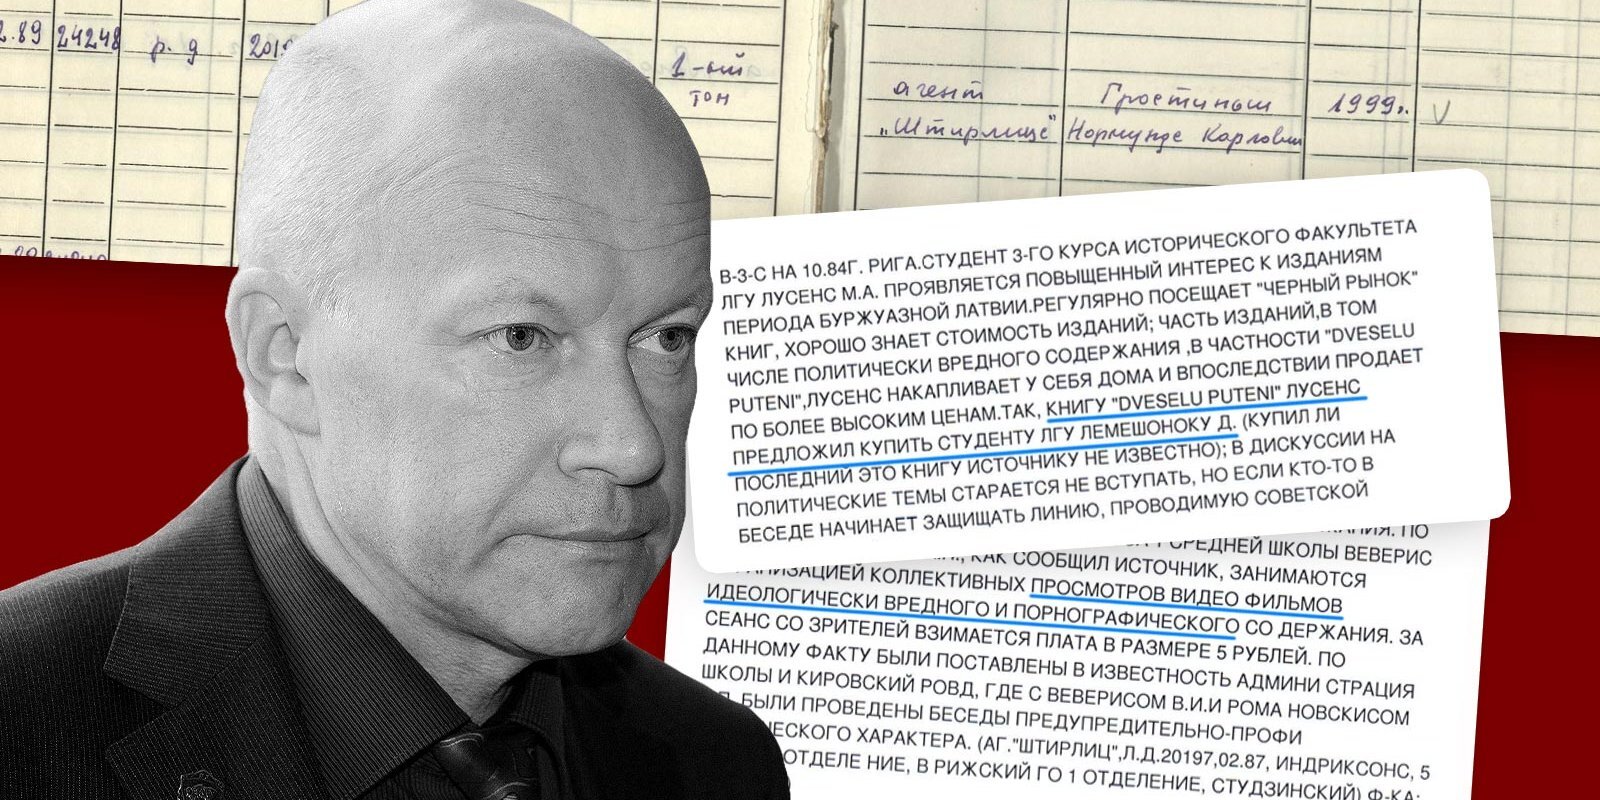 'Maisi vaļā': Aģents Štirlics ziņo par vēsturniekiem un pagrīdes porno seansiem; Grostiņš: 'Ar VDK neesmu sadarbojies'